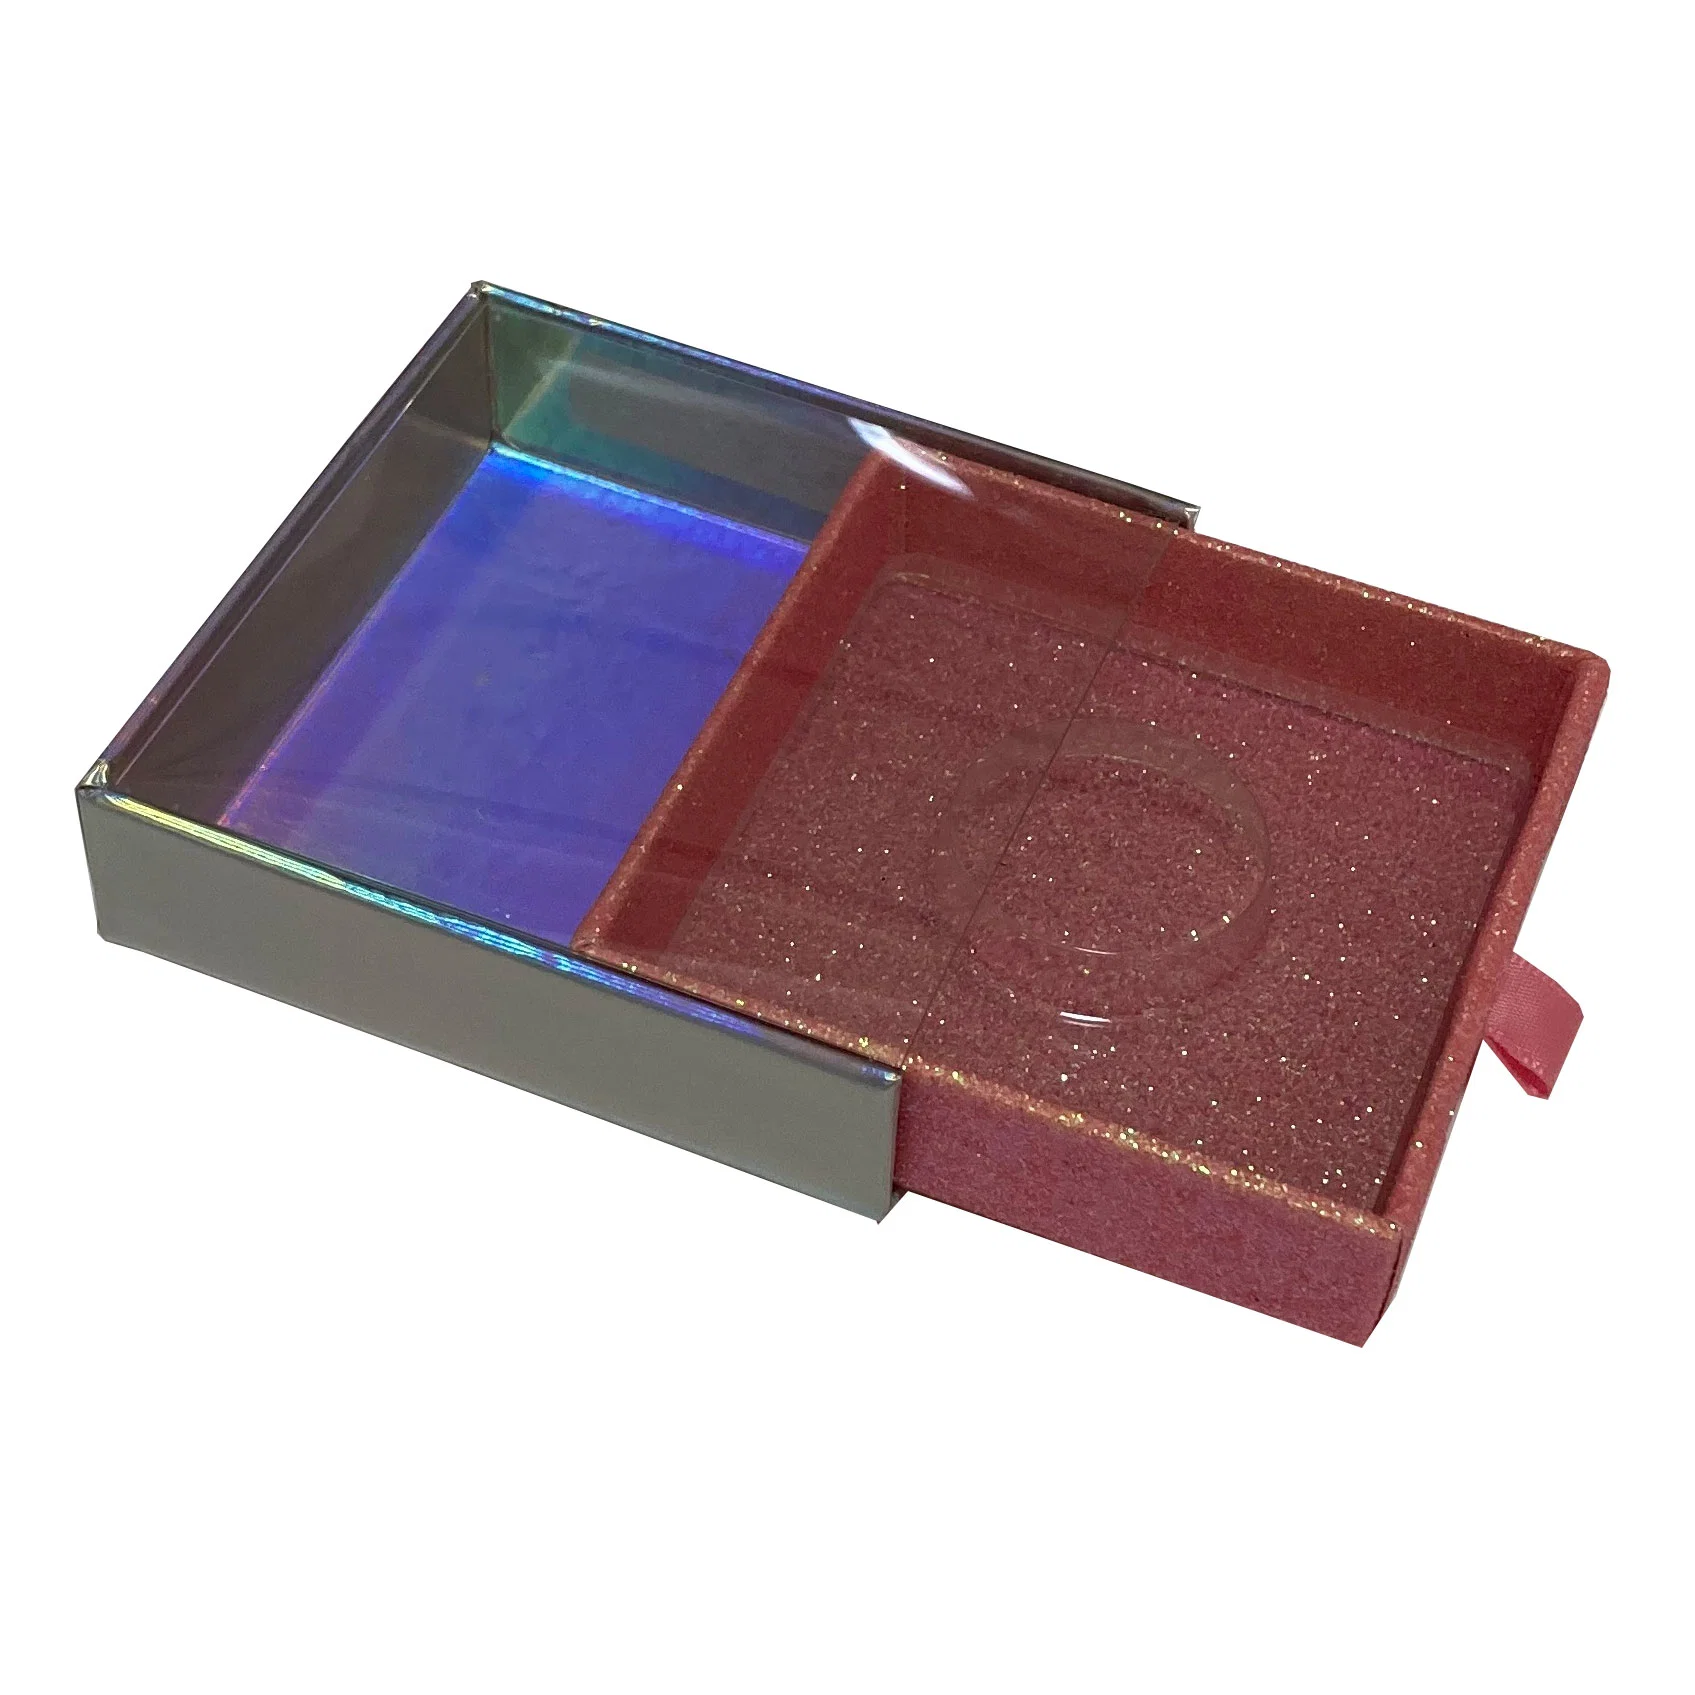 Stock Nouveau Design logo personnalisé carton imprimé carré brillant 18 mm 20 mm 25 mm 3D Mink vide Eyelash emballage boîte avec Tiroir et fenêtre en PVC